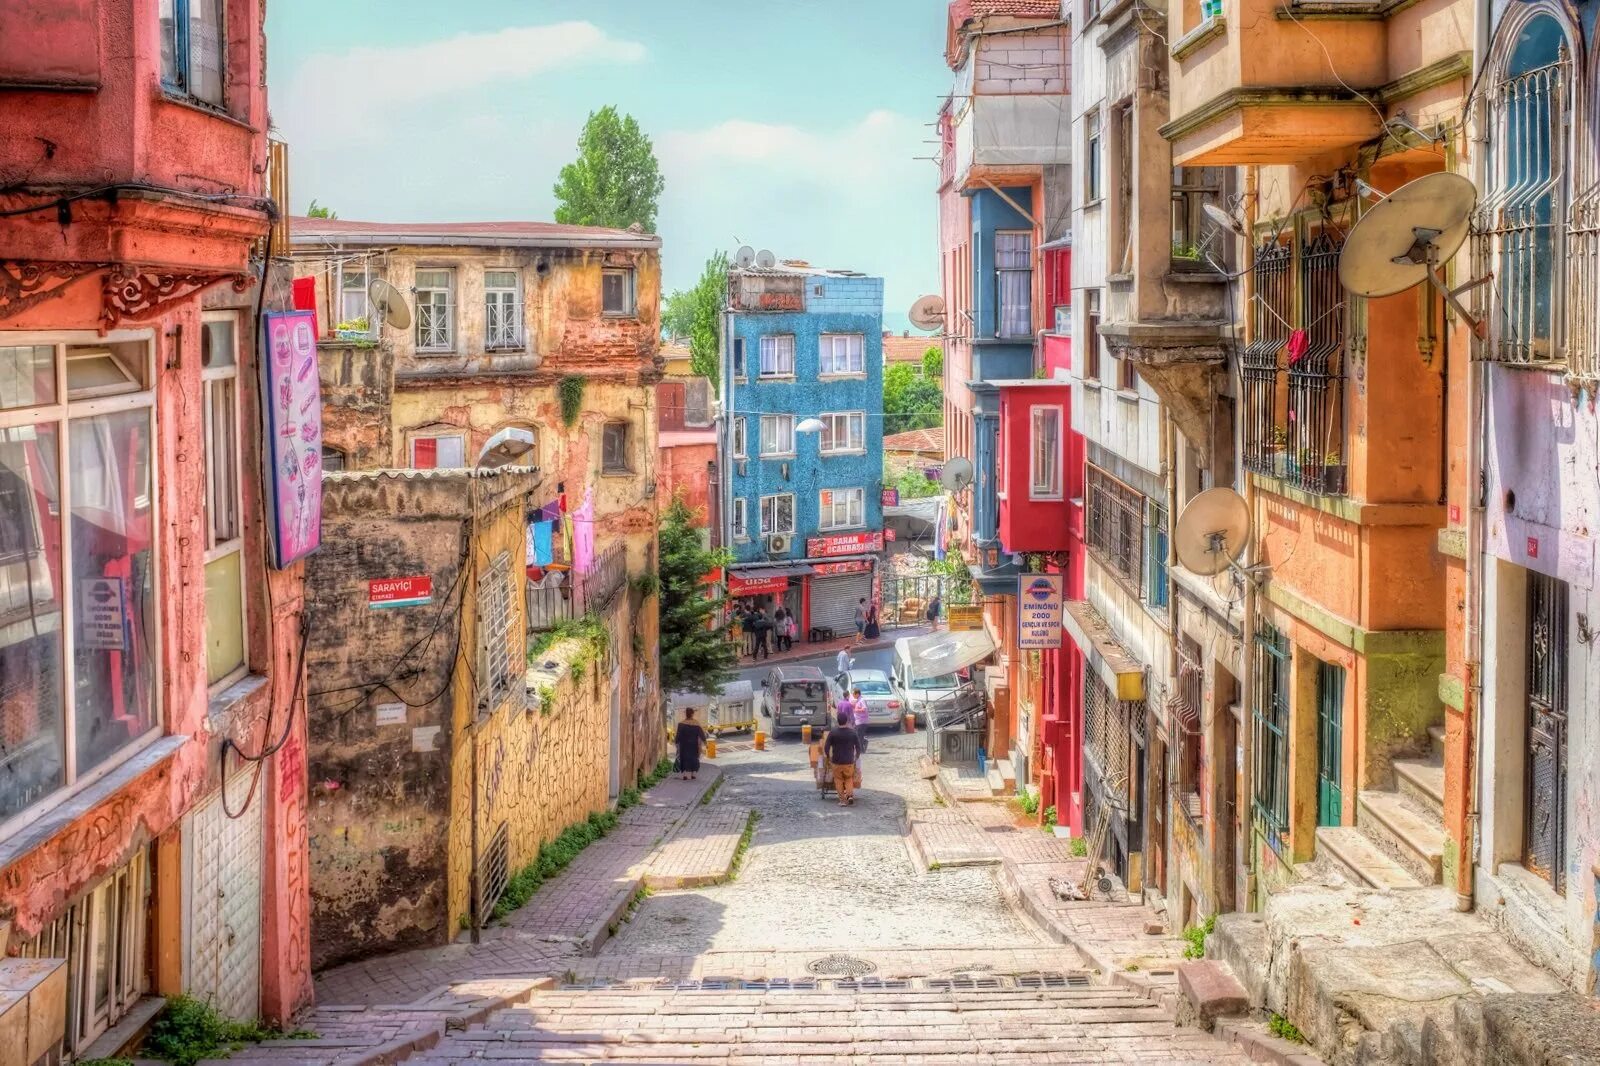 Стамбул старый город султанахмет. Улочки Стамбула старый город. Город Балат Турция. Стамбул старый город Бейоглу. Французская улица в Стамбуле.